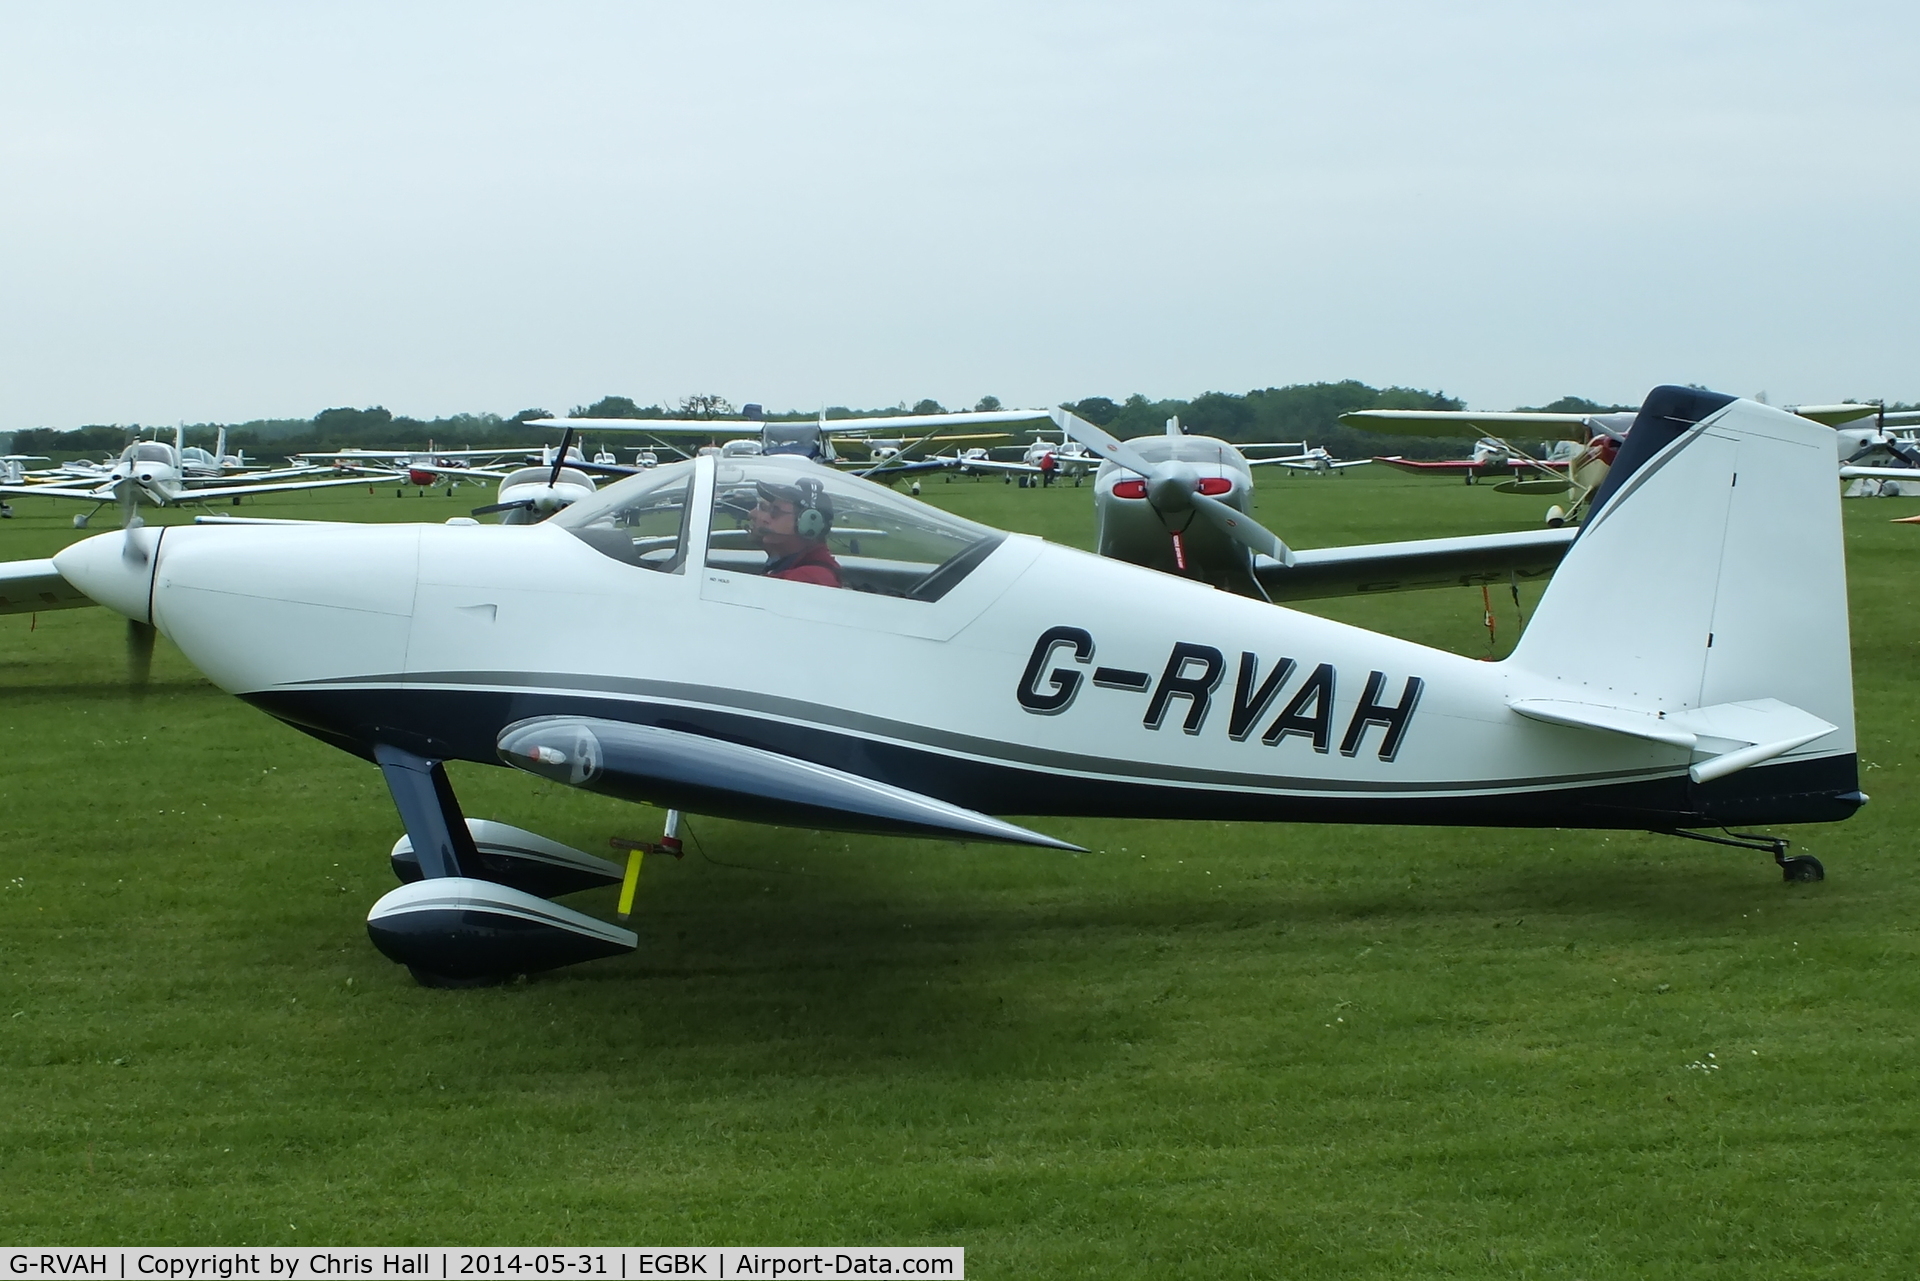 G-RVAH, 2012 Vans RV-7 C/N LAA 323-14963, at AeroExpo 2014